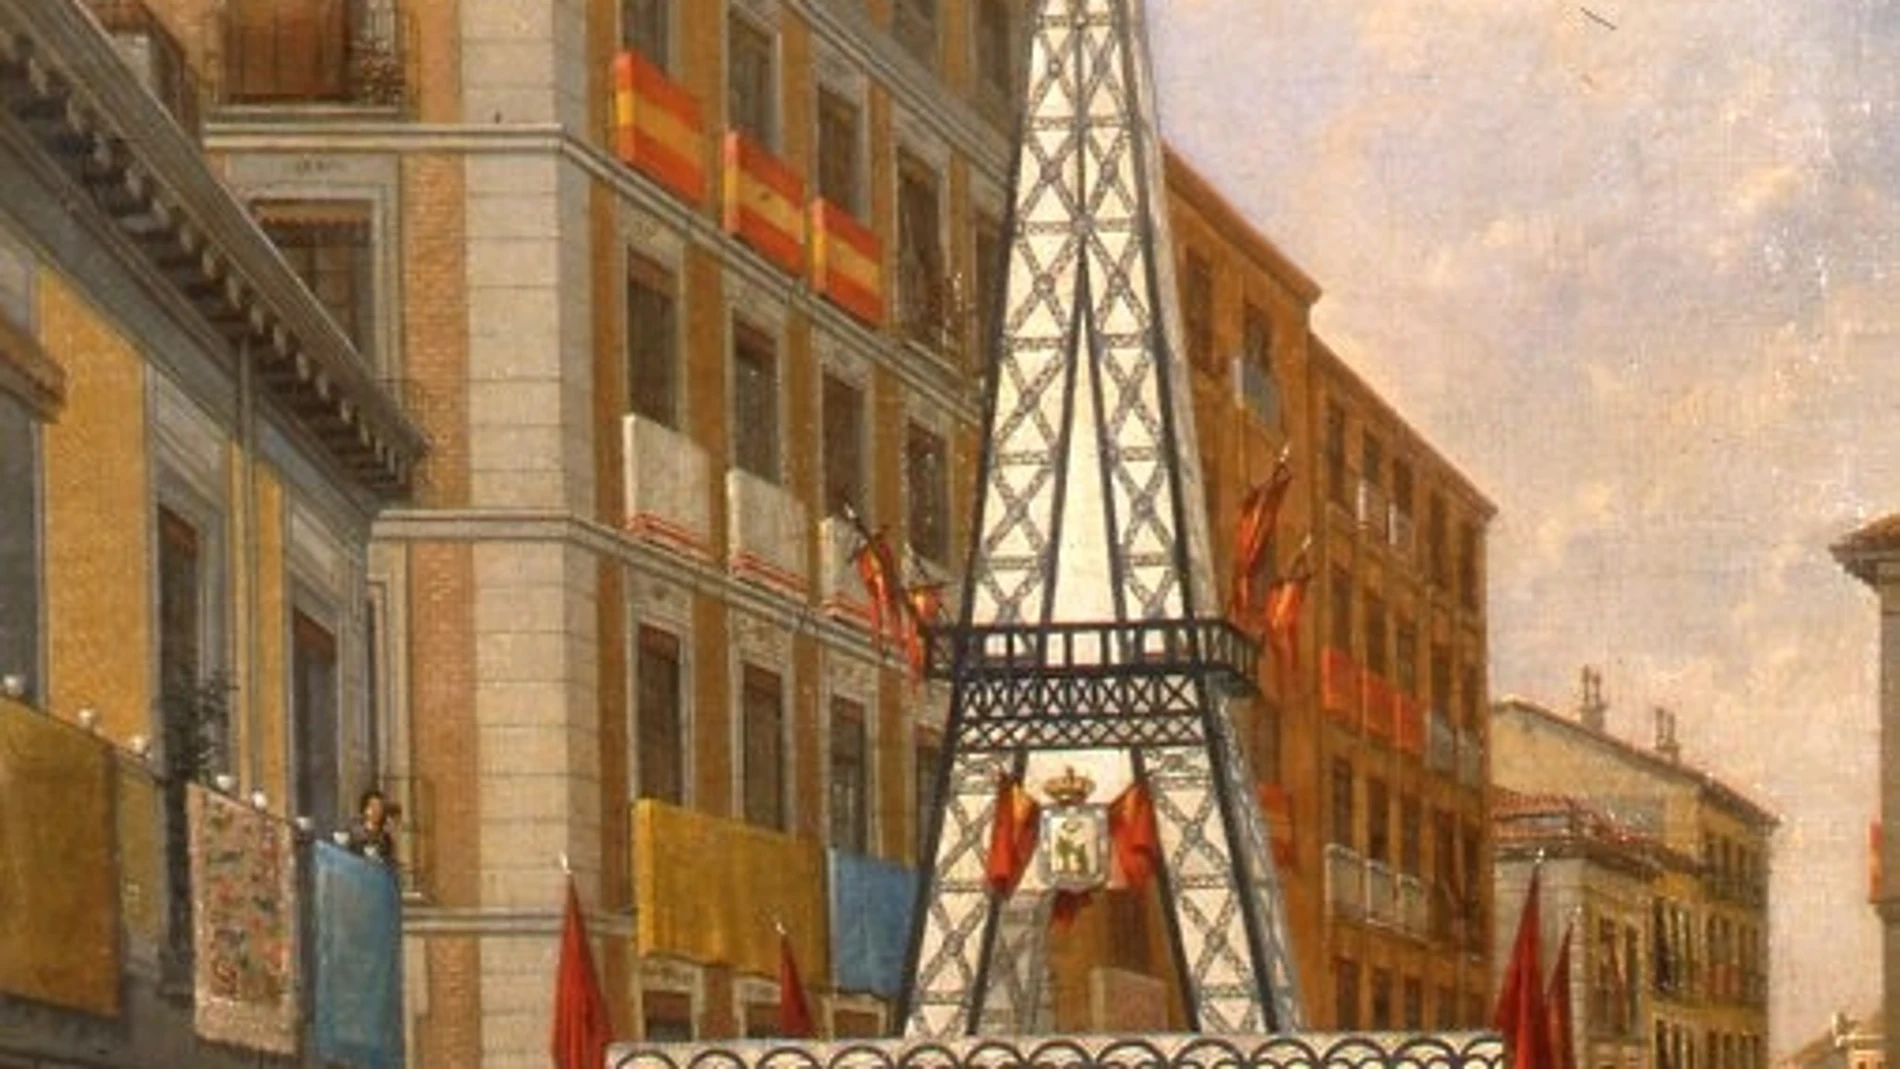 «Calle madrileña engalanada», pintura anónima de 1890 conservada en el Museo de Historia de Madrid.